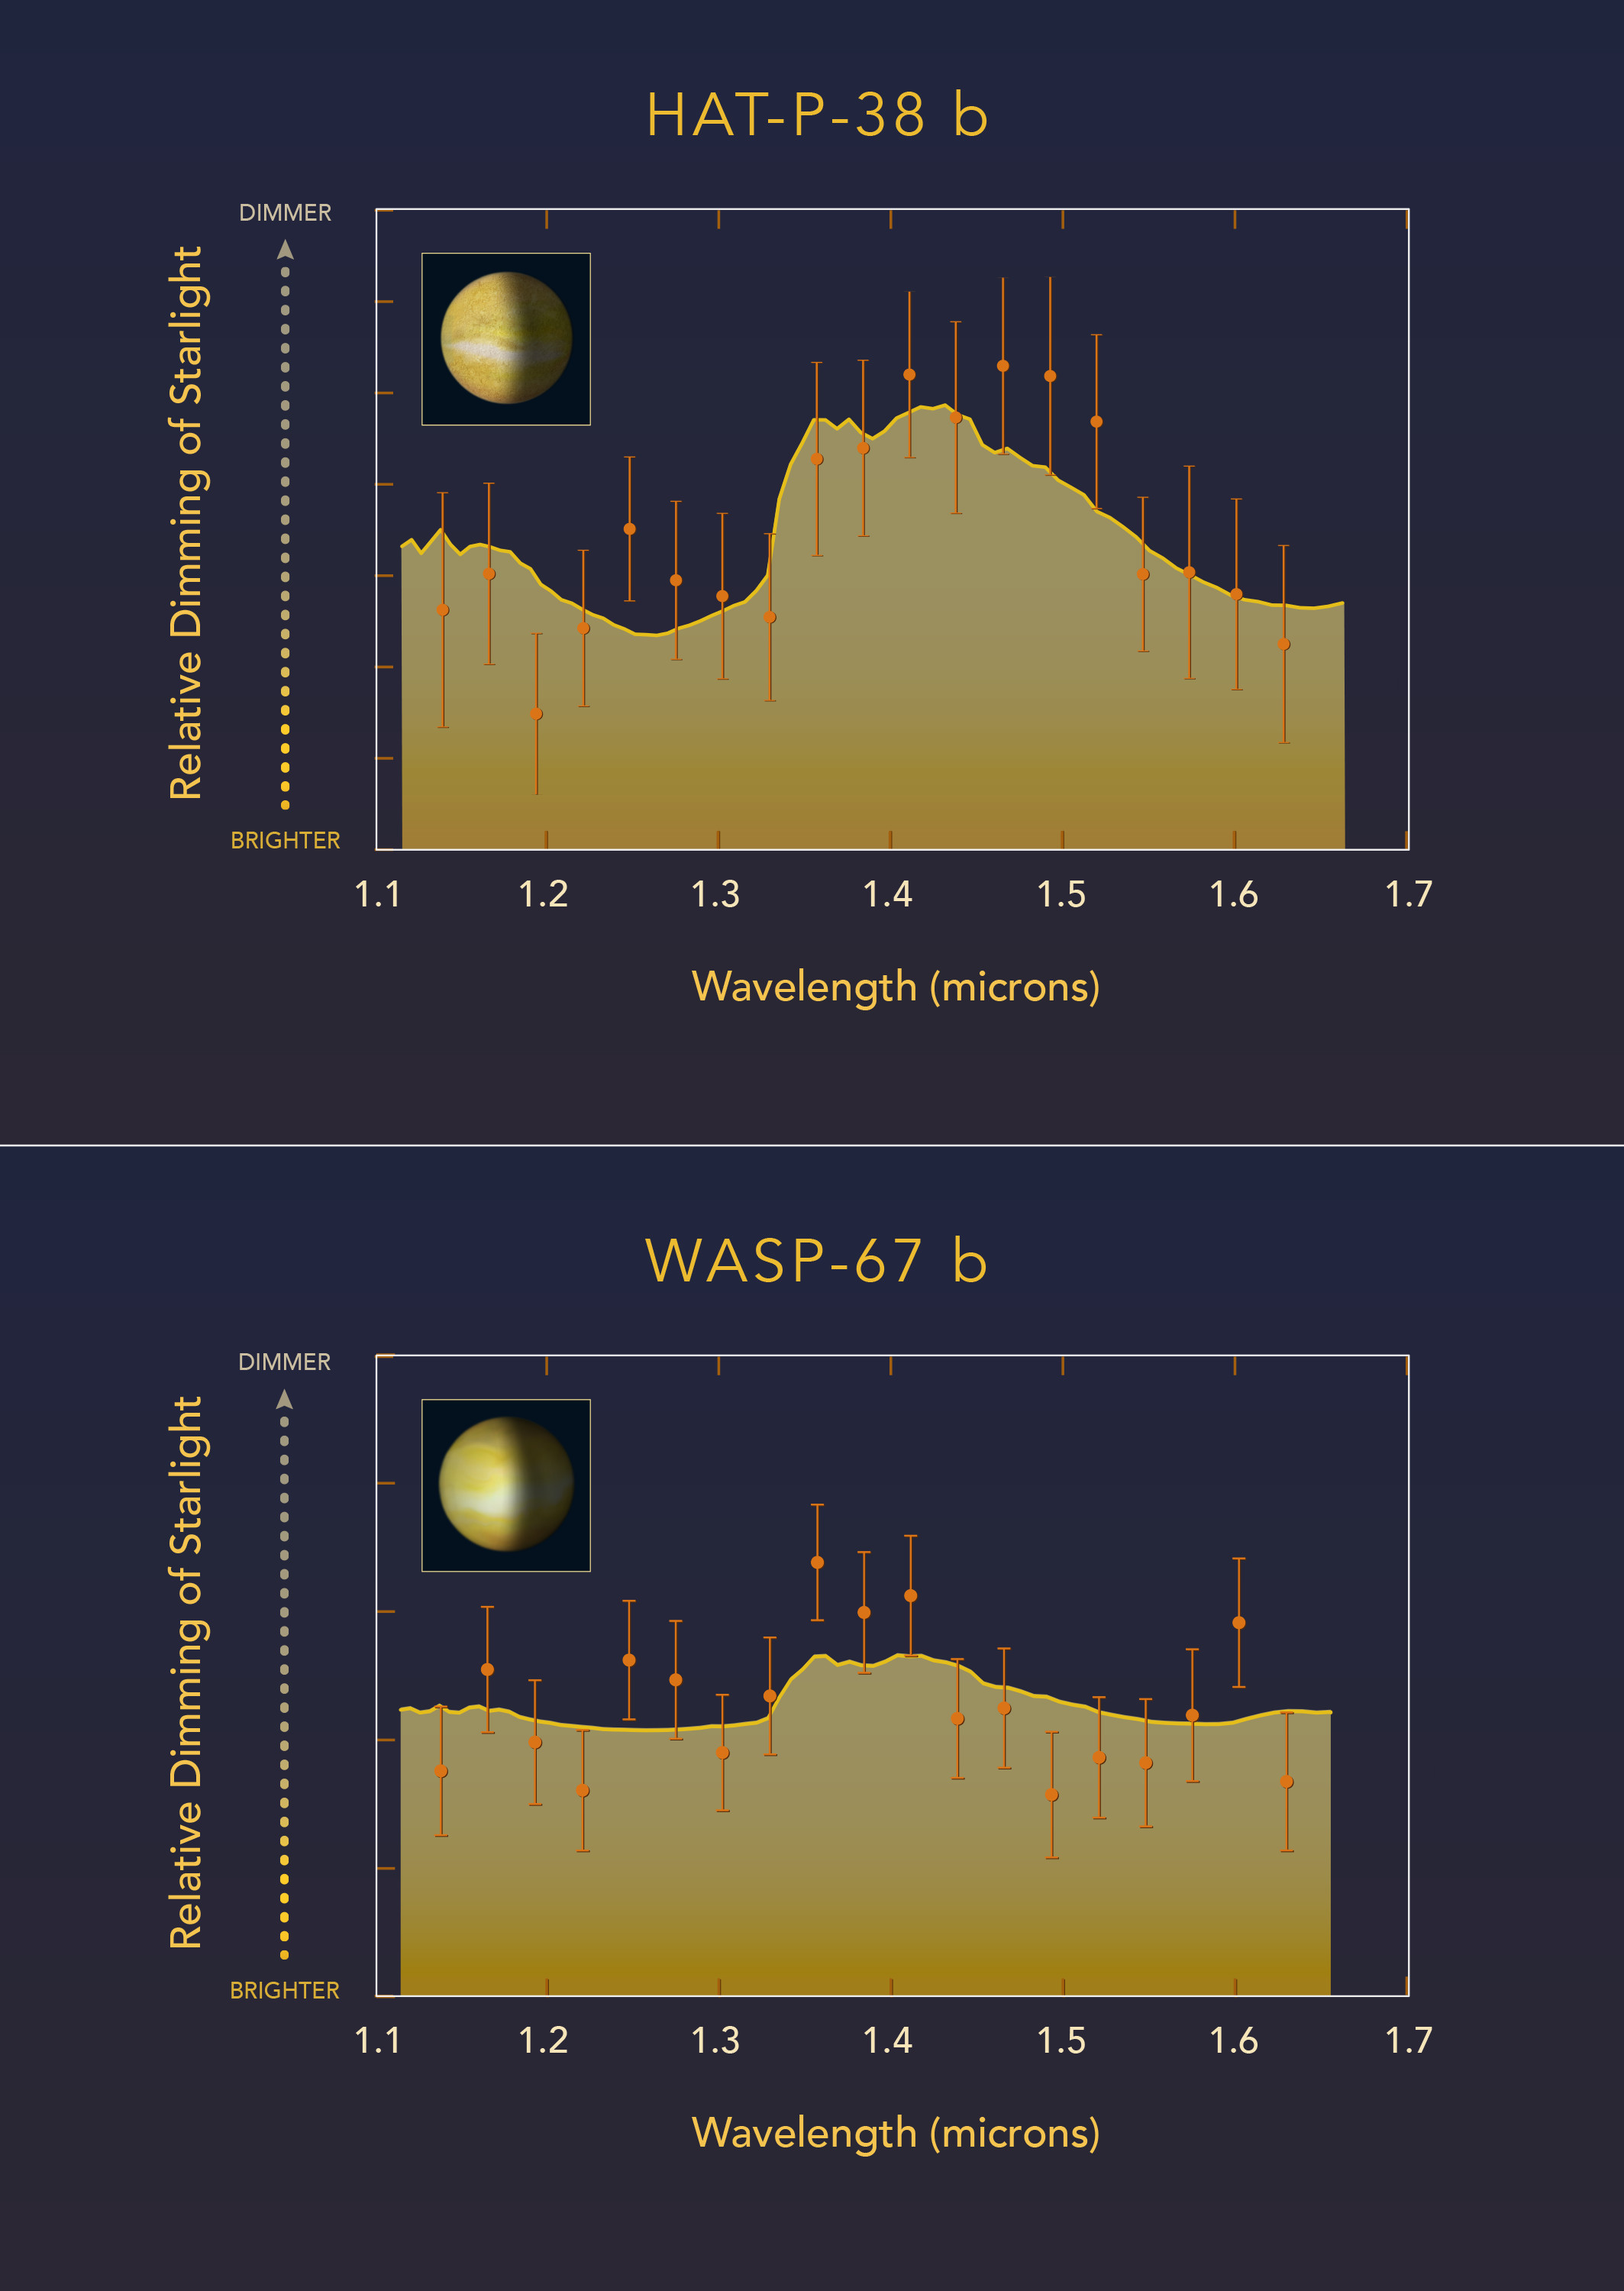 Bezchmurna w WASP-67 b versus wypełniona chmurami w HAT-P-38 b atmosfera egzoplanet. Taką interpretację sugerują widma transmisyjne atmosfer ww. egzoplanet w bliskiej podczerwieni uzyskane za pomocą Kosmicznego Teleskopu Hubble’a. Są to egzoplanety typu „gorący Jowisz”, krążące bardzo blisko gwiazd podobnych do Słońca. Astronomowie zmierzyli, jak promieniowanie macierzystych gwiazd jest filtrowane odpowiednio przez atmosferę każdej egzoplanety. Obserwacje spektroskopowe Teleskopu Hubble’a w bliskiej podczerwieni zostały wykorzystane do detekcji wody w atmosferach tych egzoplanet. Egzoplaneta HAT-P-38 b prezentuje sygnaturę wody w postaci maksimum absorpcyjnego w widmie, którą interpretuje się jako brak chmur i zamgleń w górnej atmosferze. Z drugiej strony, bardzo podobny gorący Jowisz WASP-67 b posiada prawie płaskie widmo, które wskazuje na brak struktury absorpcyjnej pochodzącej od wody - co interpretuje się, że większa część atmosfery WASP-67 b jest schowana za wysokimi chmurami. Źródło: NASA, ESA, and Z. Levy (STScI)